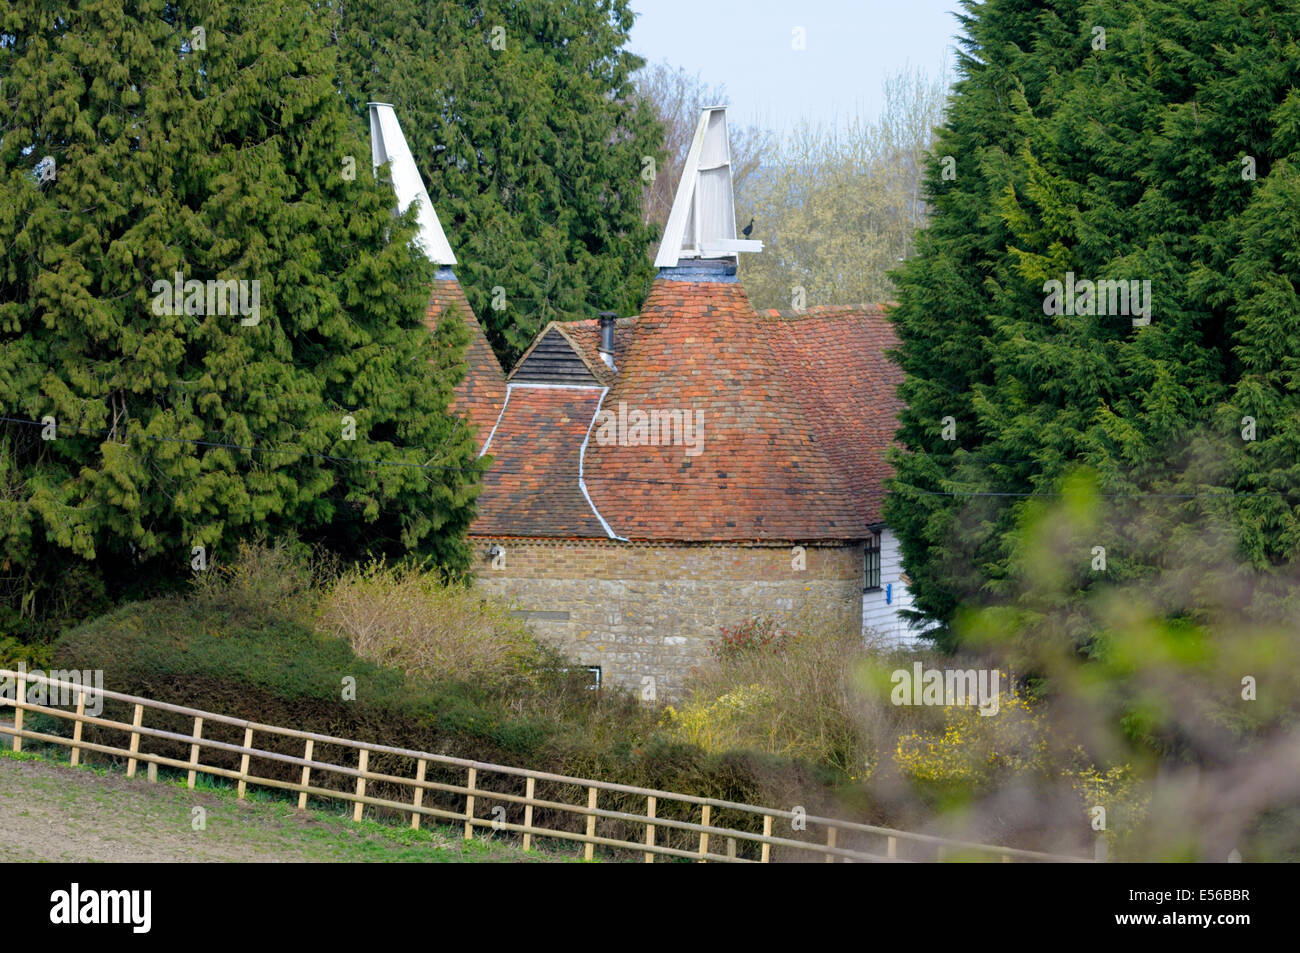 Village lâche, près de Maidstone, Kent, Angleterre. Maisons Oast (convertis en maisons) Banque D'Images